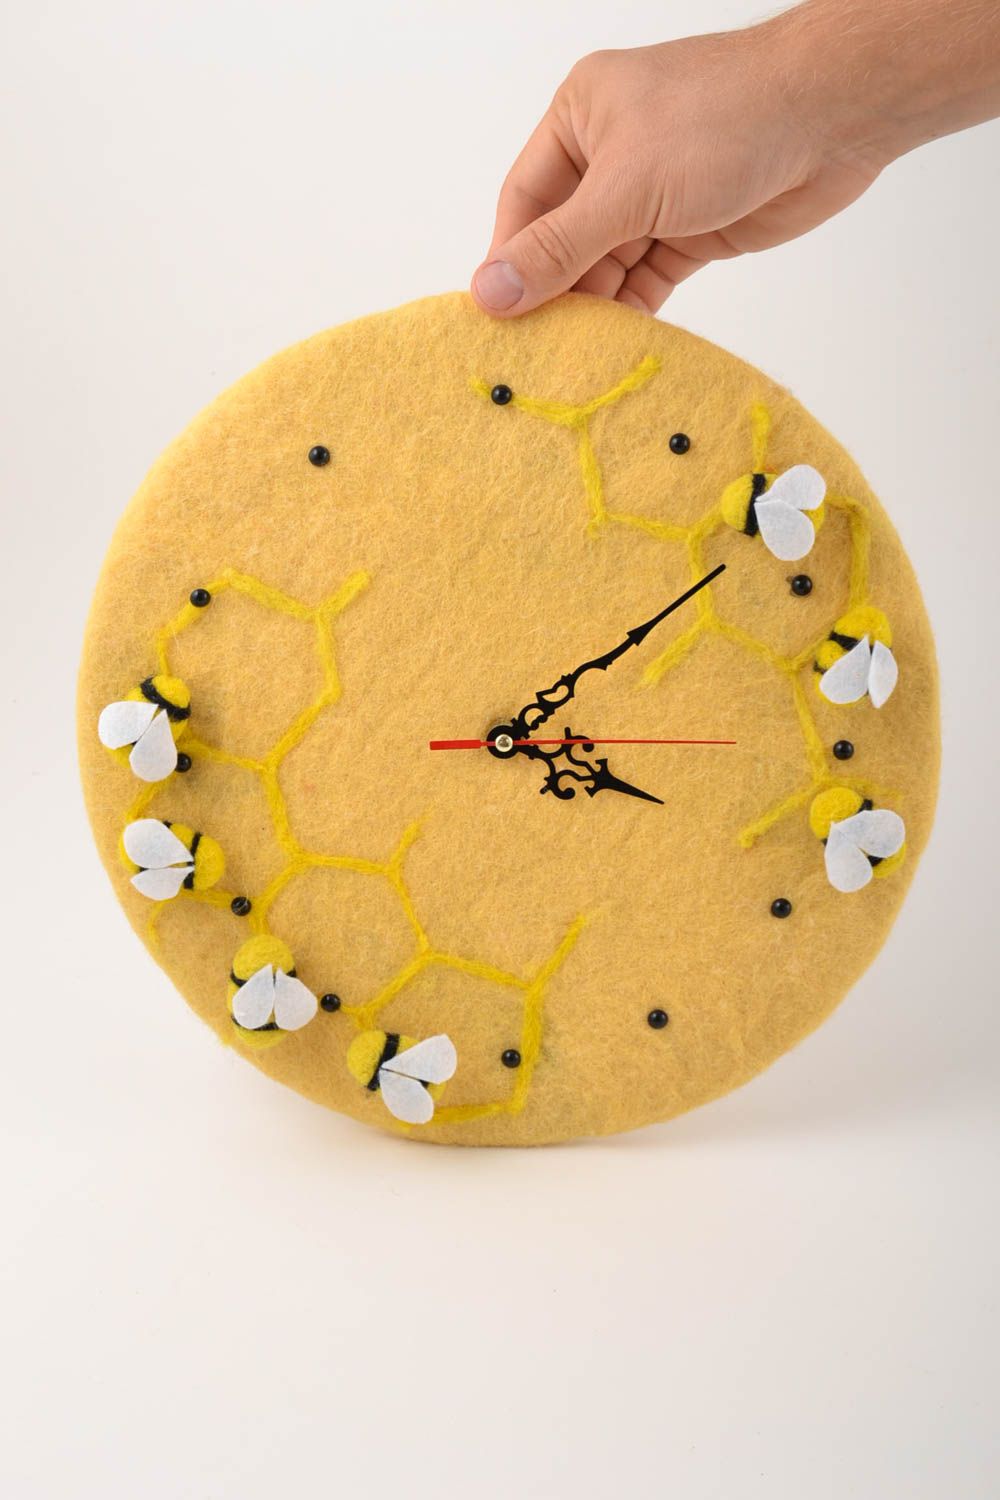 Часы ручной работы часы необычные круглые часы на кухню настенные часы желтые фото 2